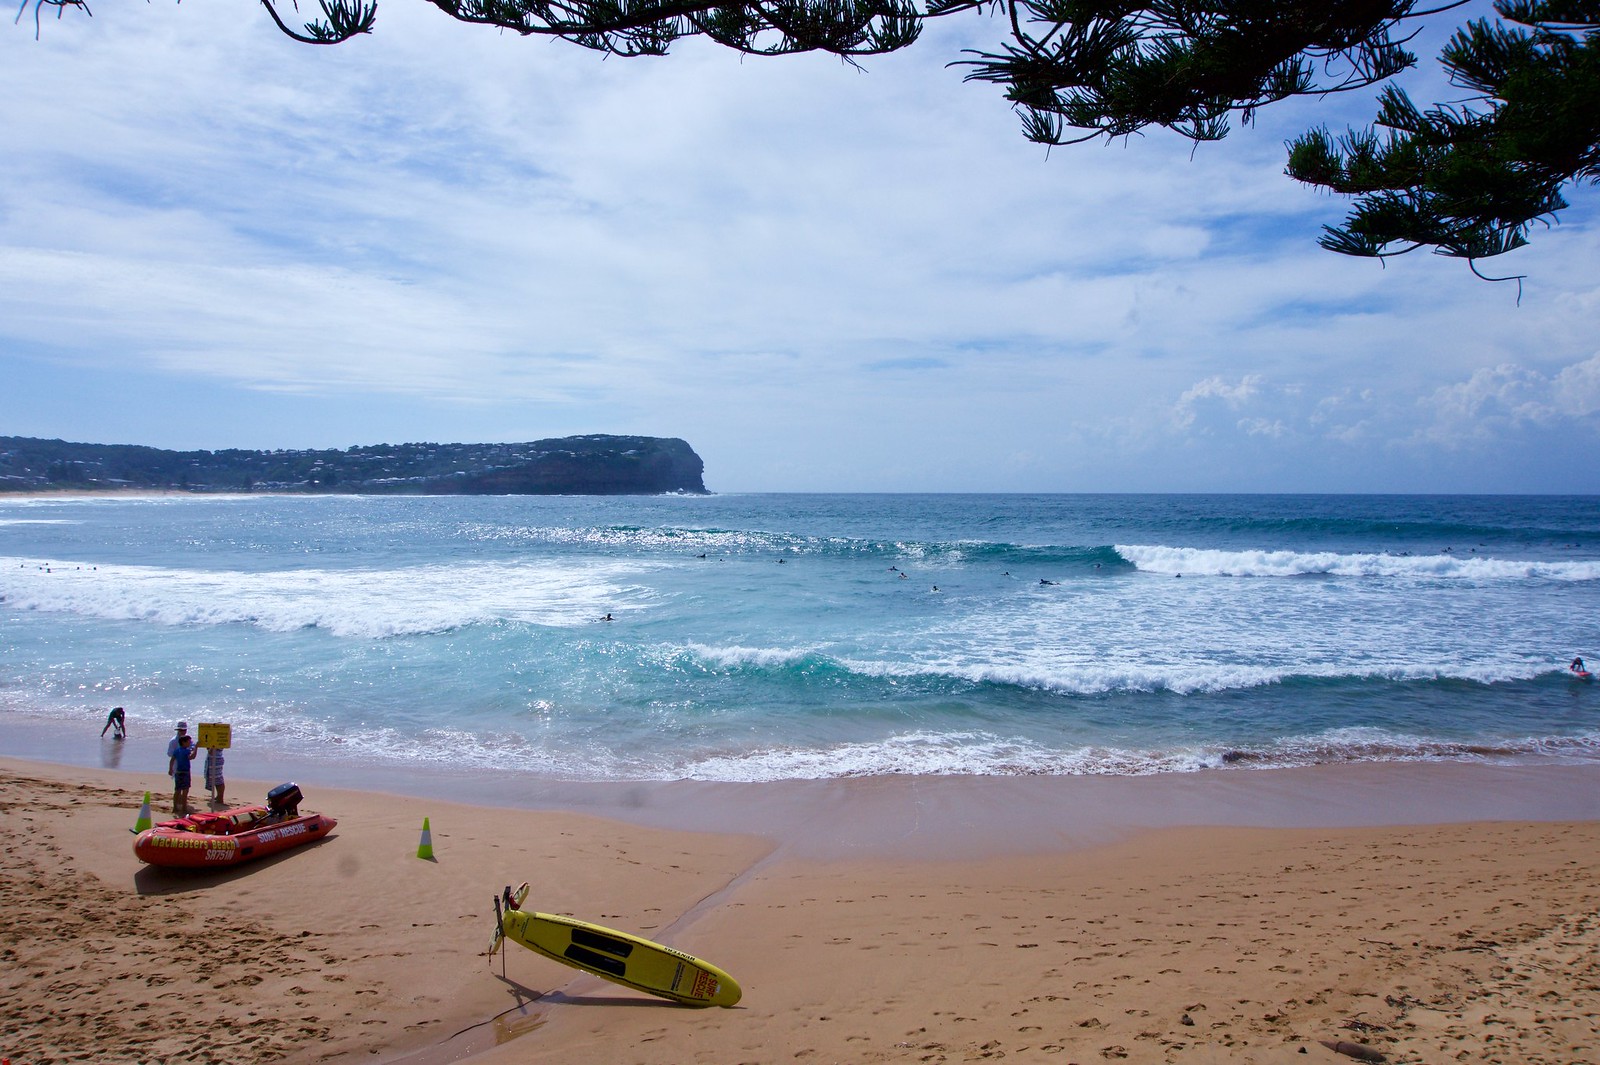 Non-touristy surfing beach